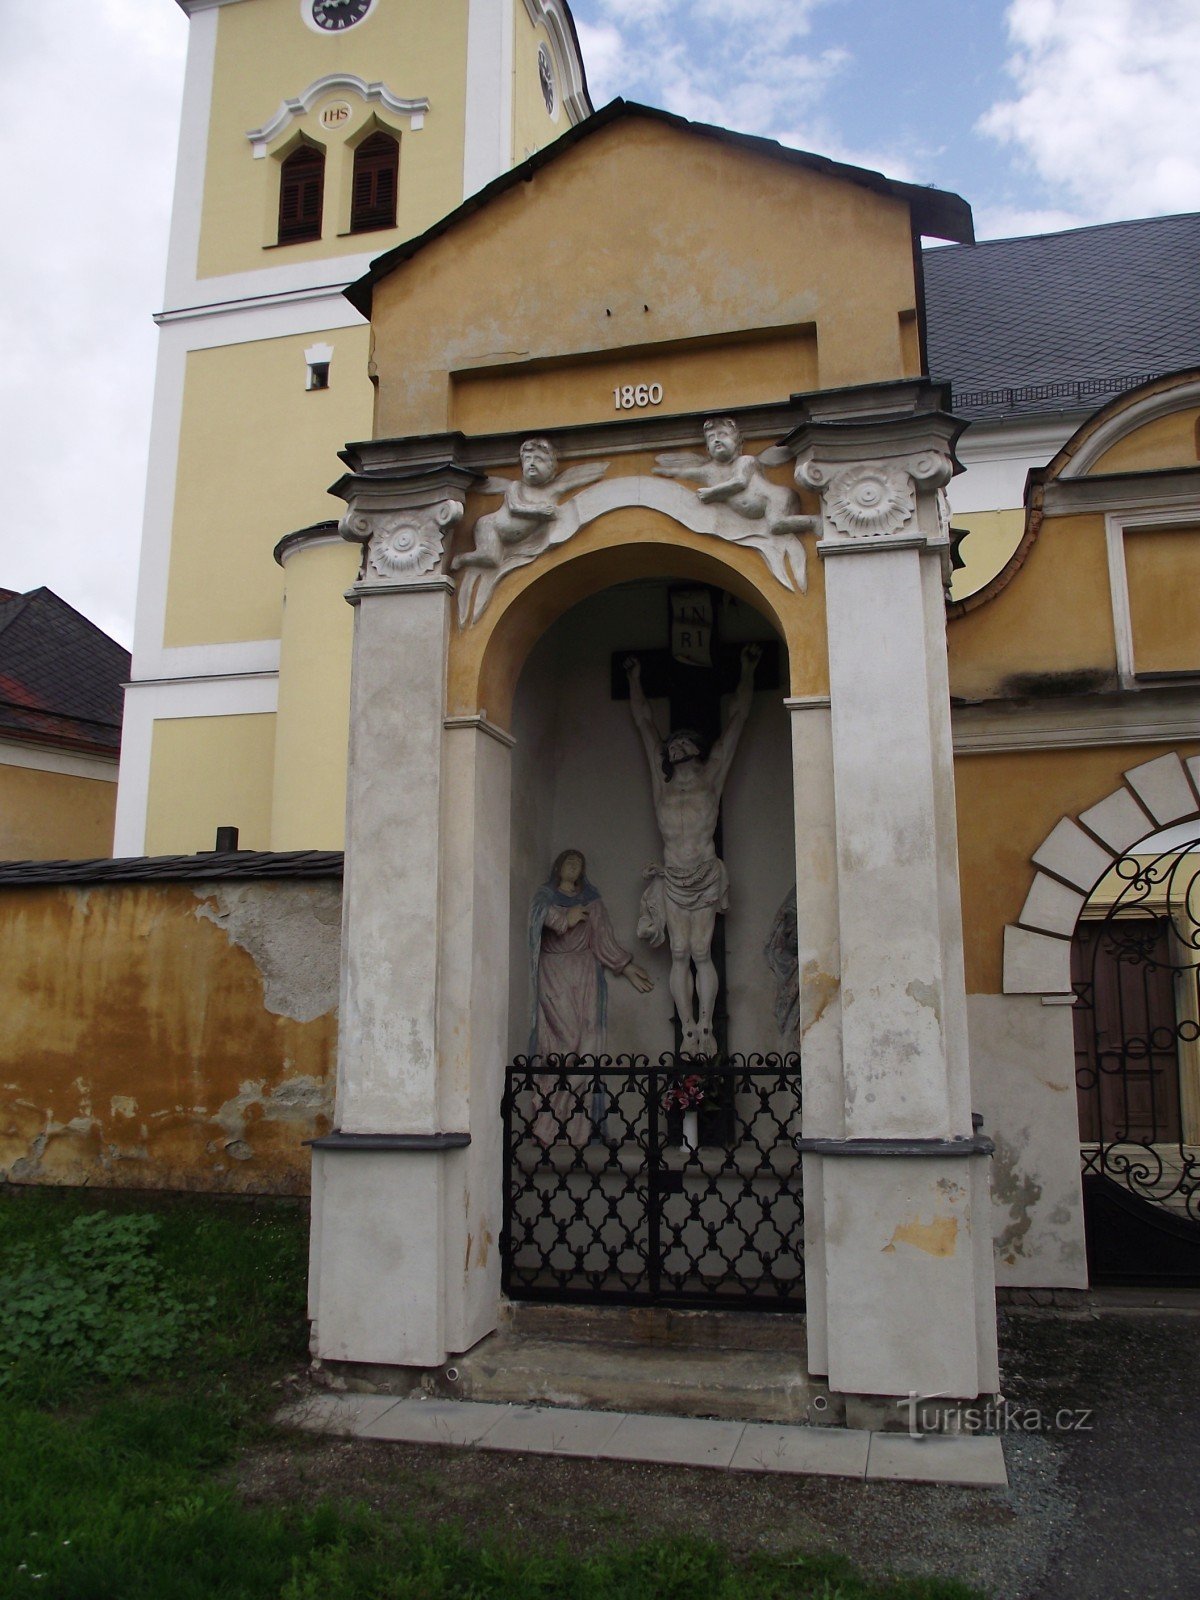 Moravičany - un village plein de (pas seulement de petits) monuments